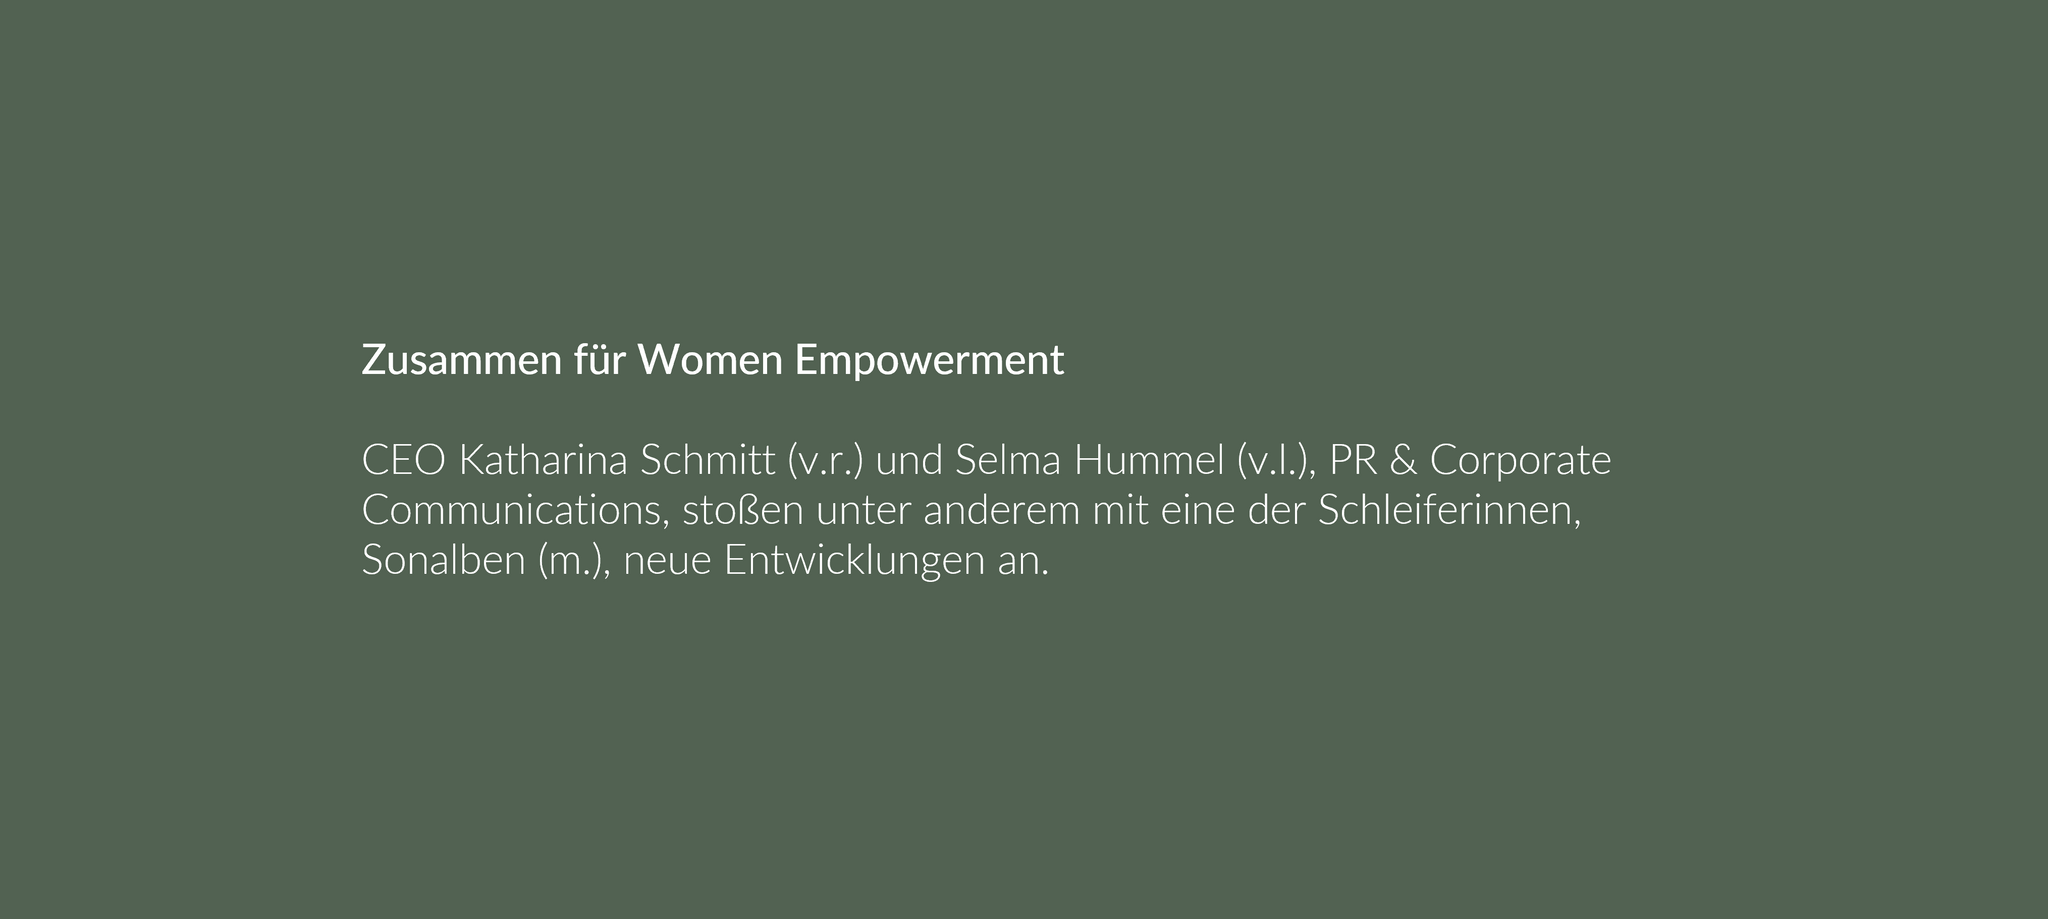 Zusammen für Women Empowerment